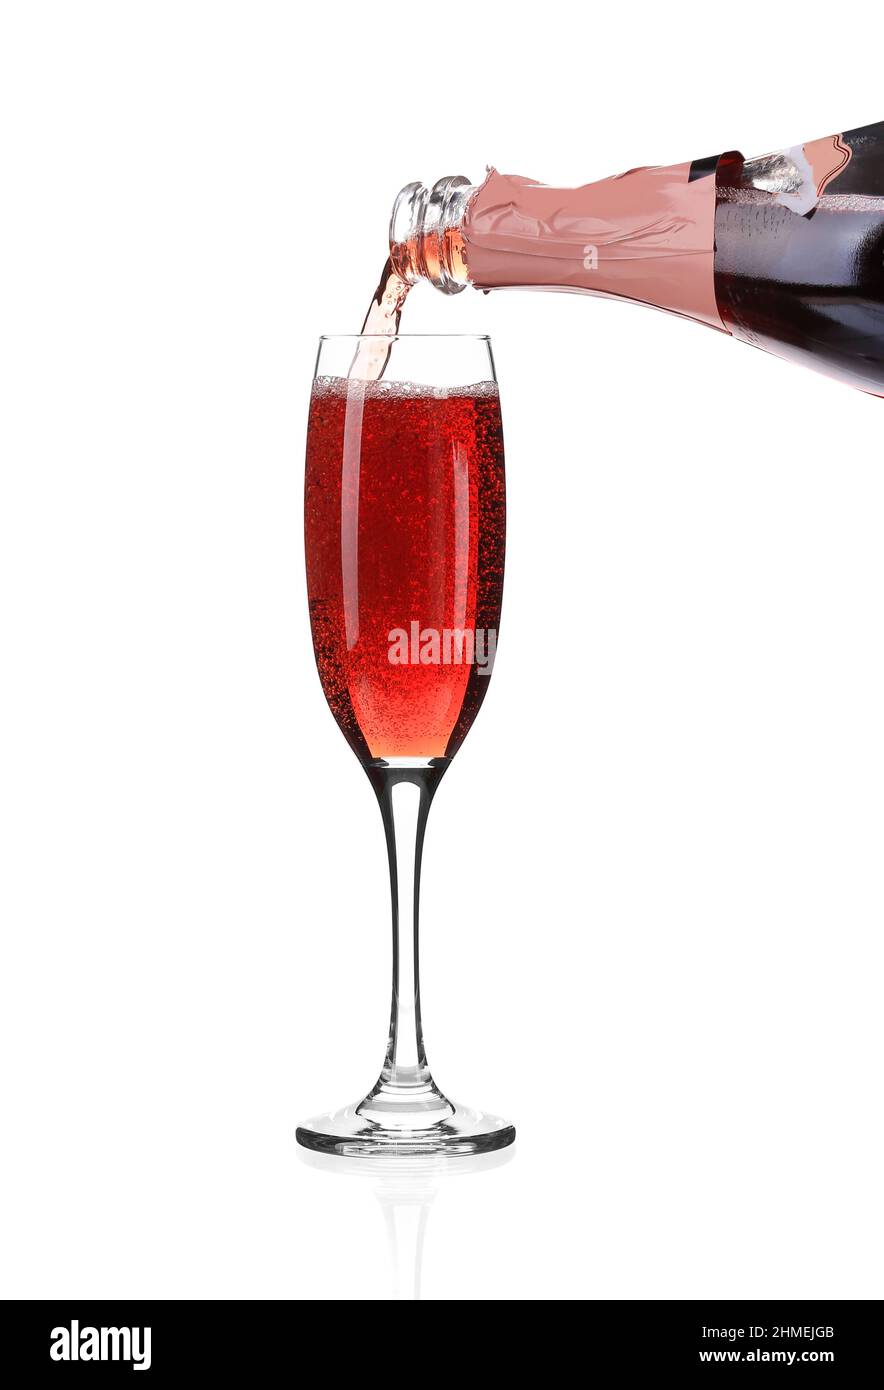 https://c8.alamy.com/compes/2hmejgb/champan-rojo-vertiendo-en-una-copa-aislado-sobre-fondo-blanco-2hmejgb.jpg